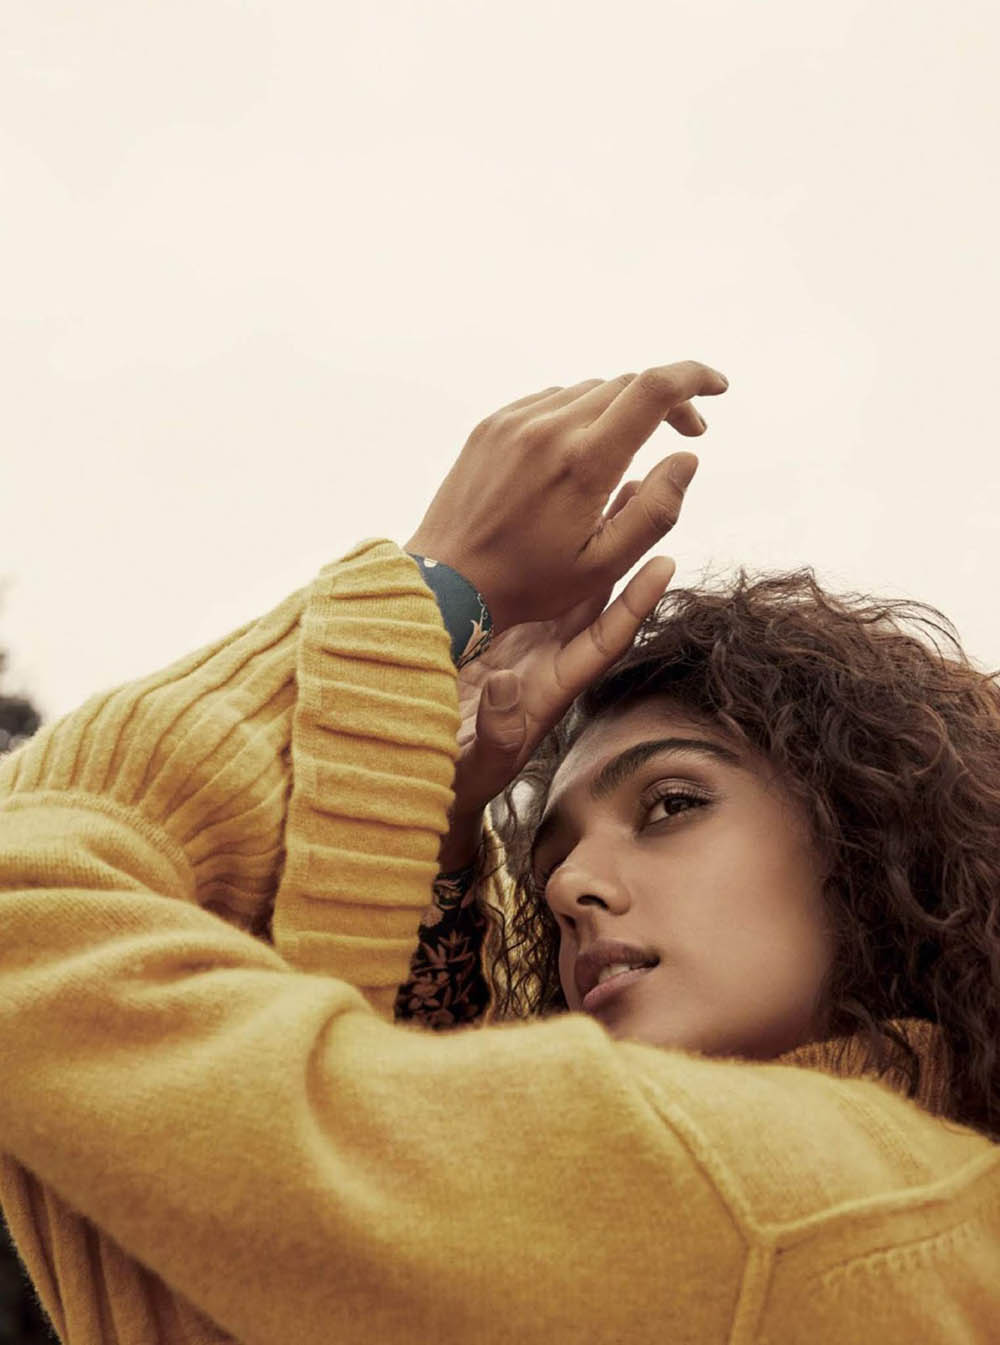 Kiran Kandola by Lucia O'Connor-McCarthy for Harper’s Bazaar India October 2018